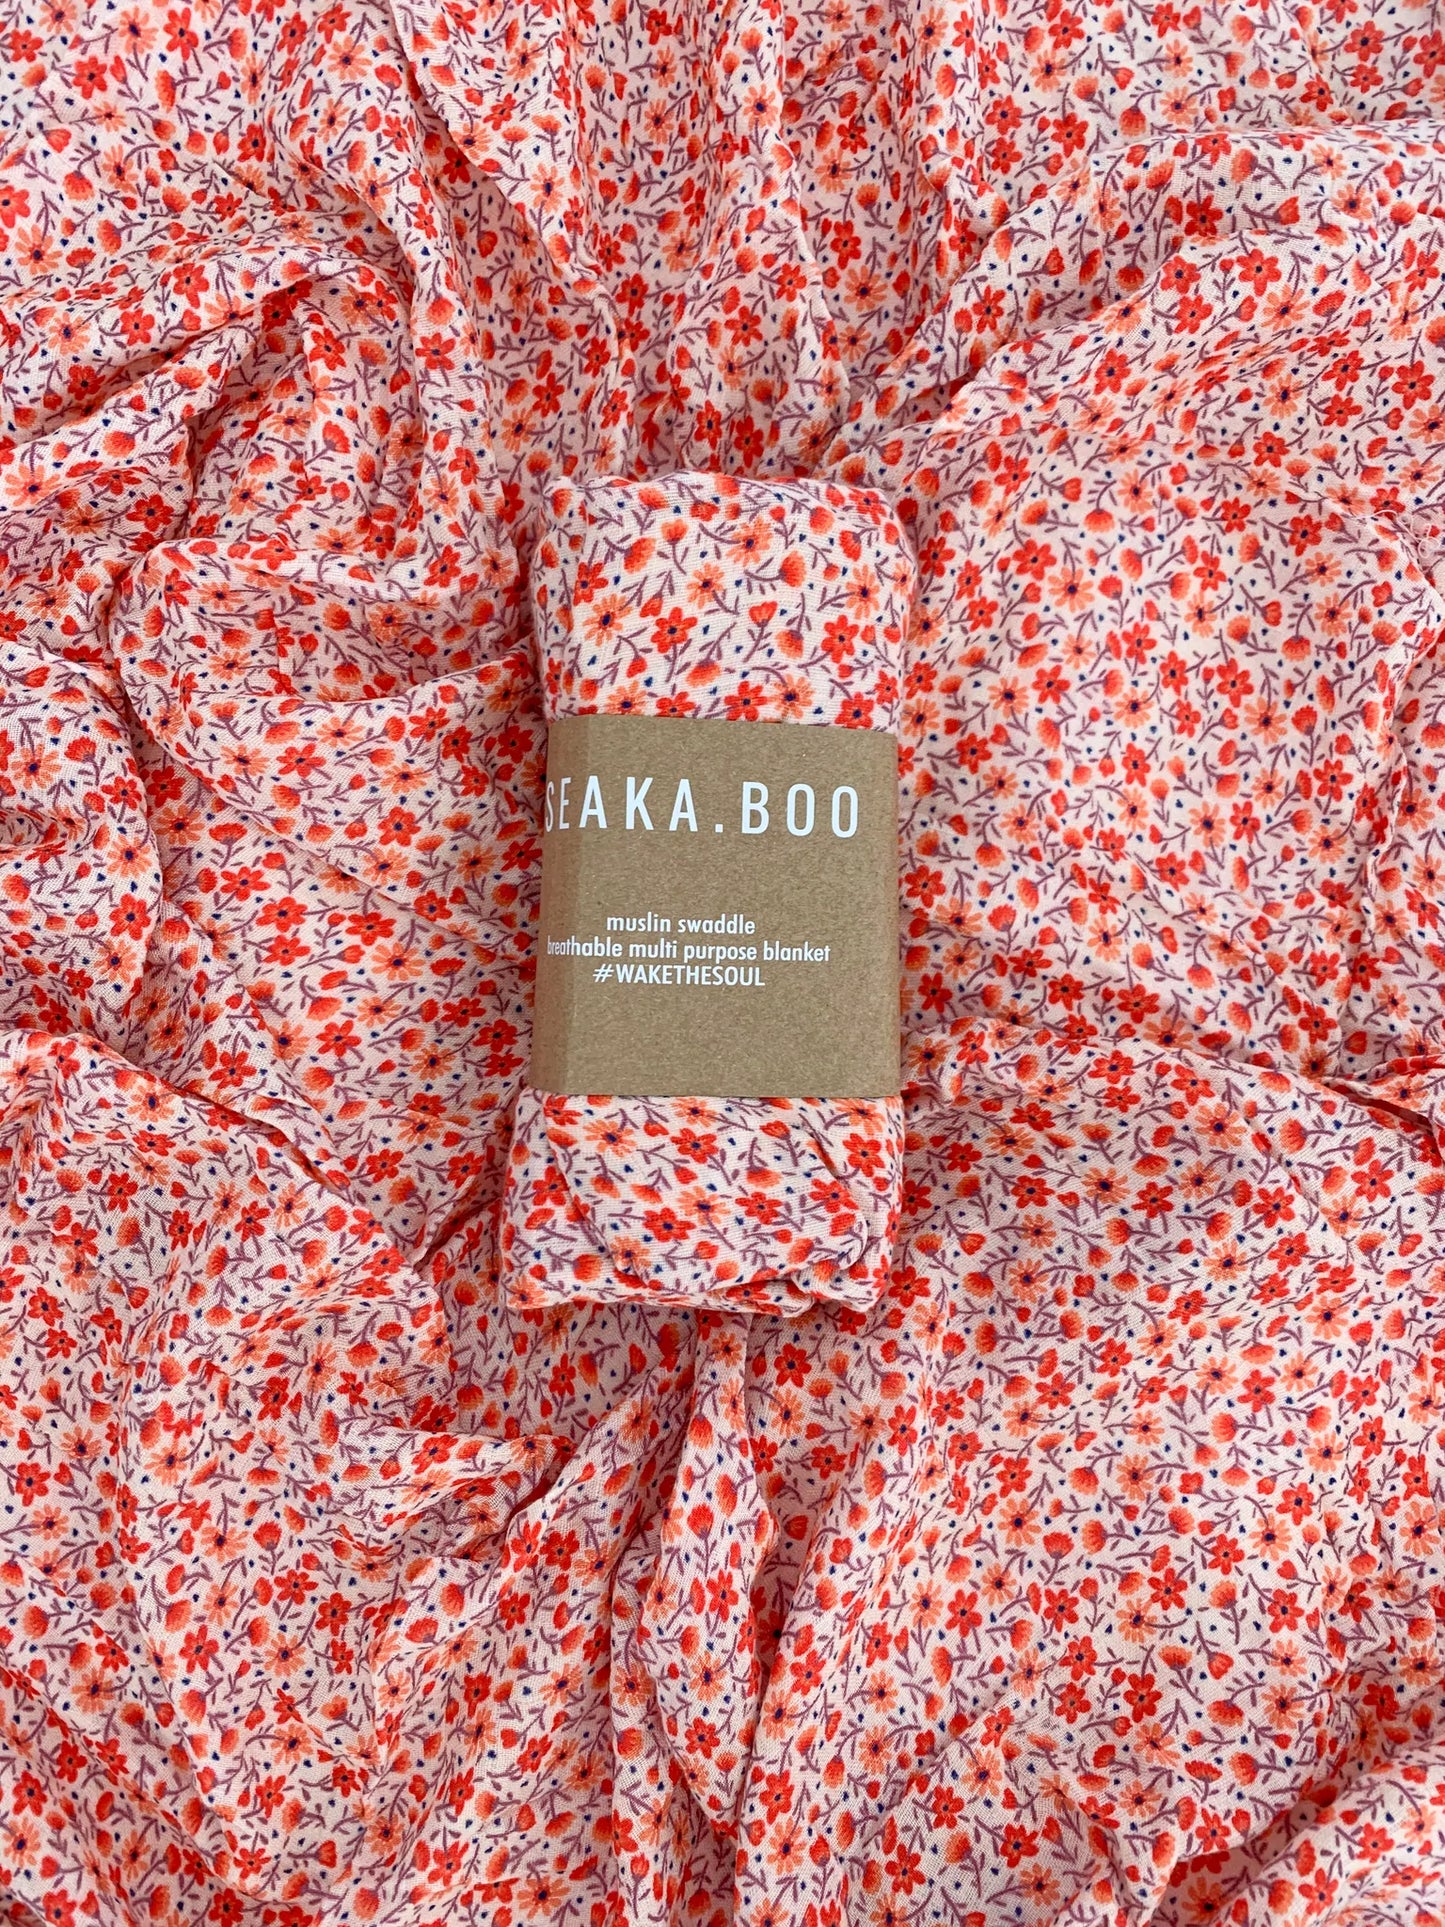 Seaka Boo Wrap, Bamboo / Cotton - Tulsi